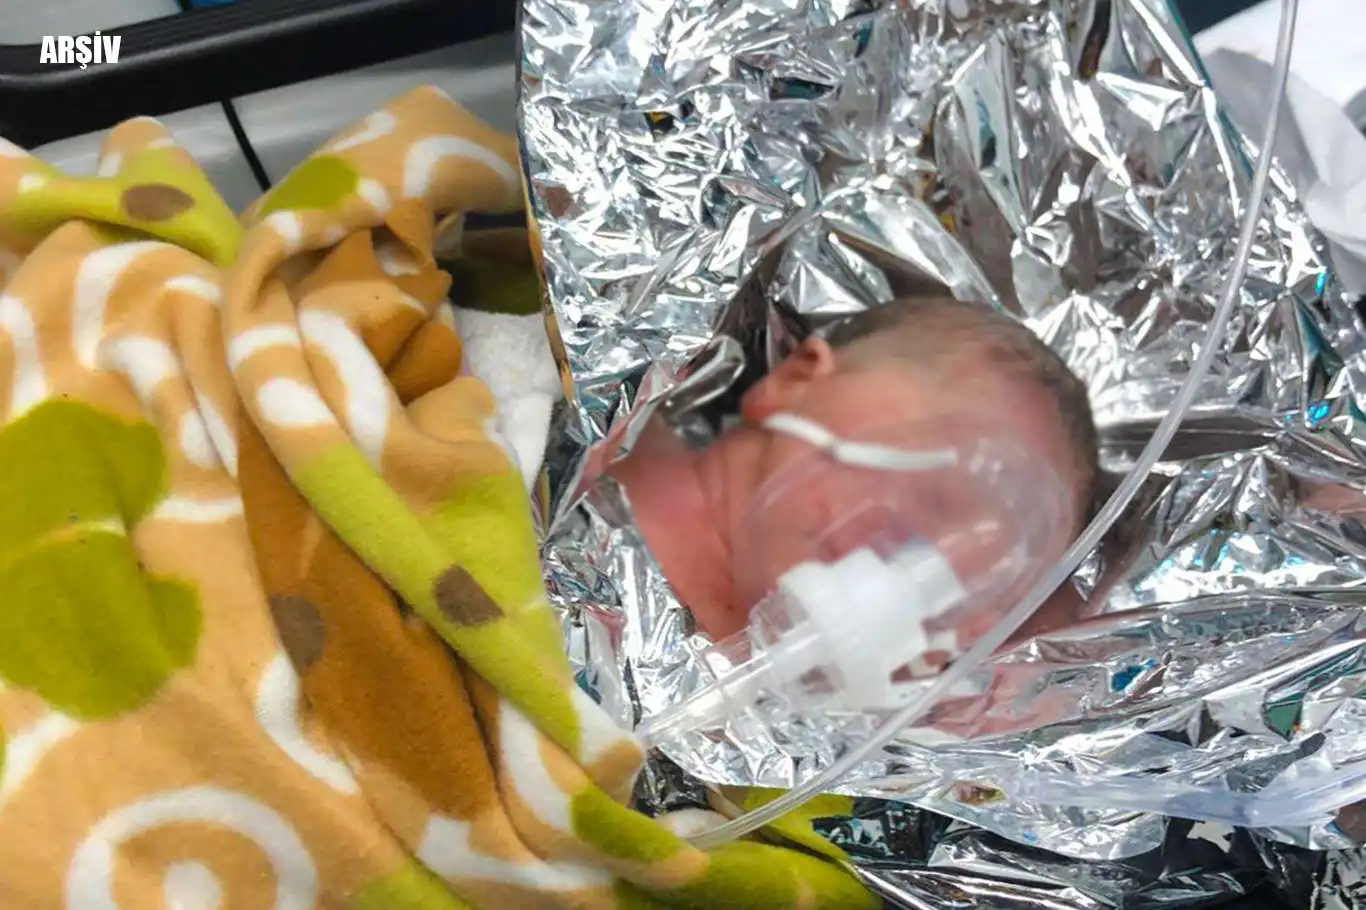 Şanlıurfa'da apartman önünde bebek bulundu